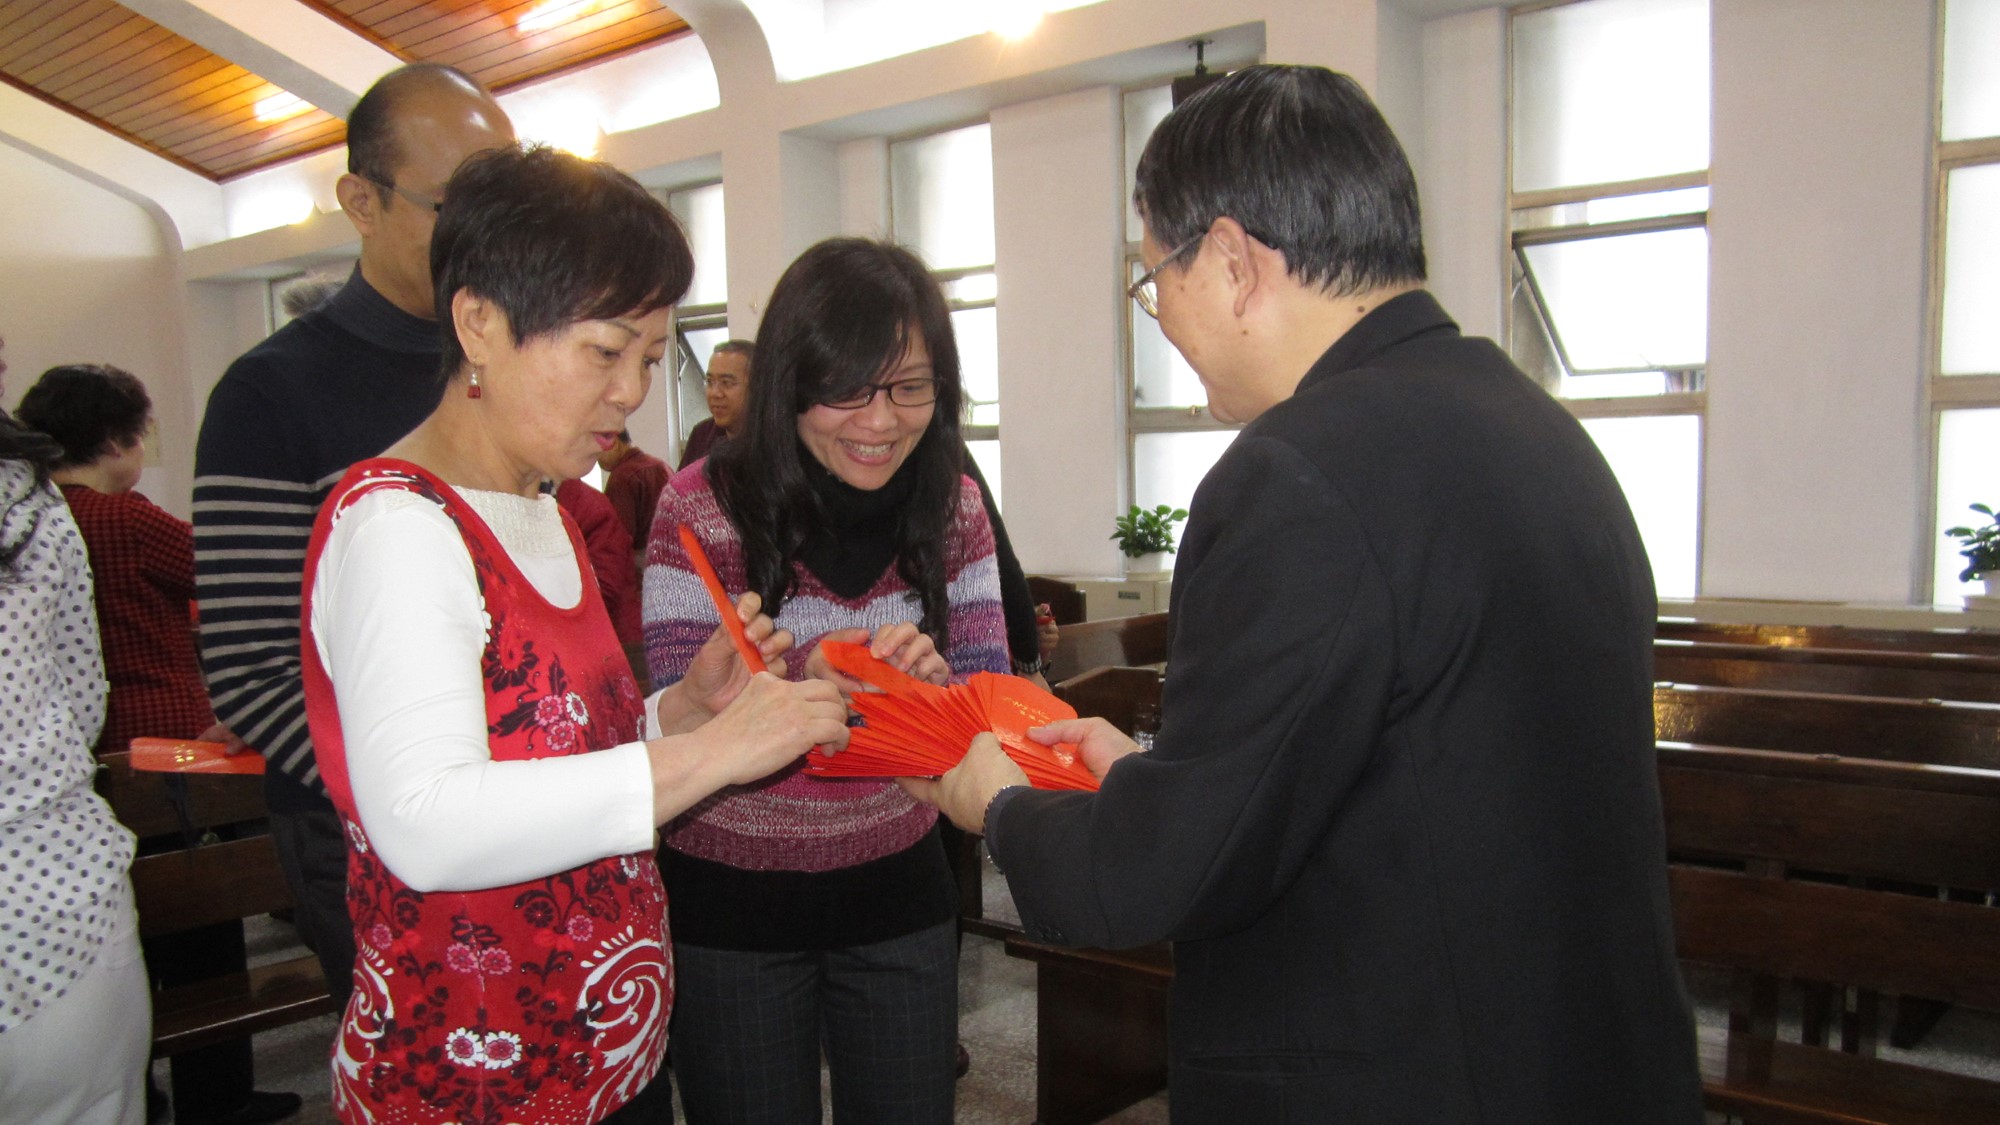 Pastor Du deler ut konvolutter med bibelvers til to kvinner på nyttårsfeiring i 2014